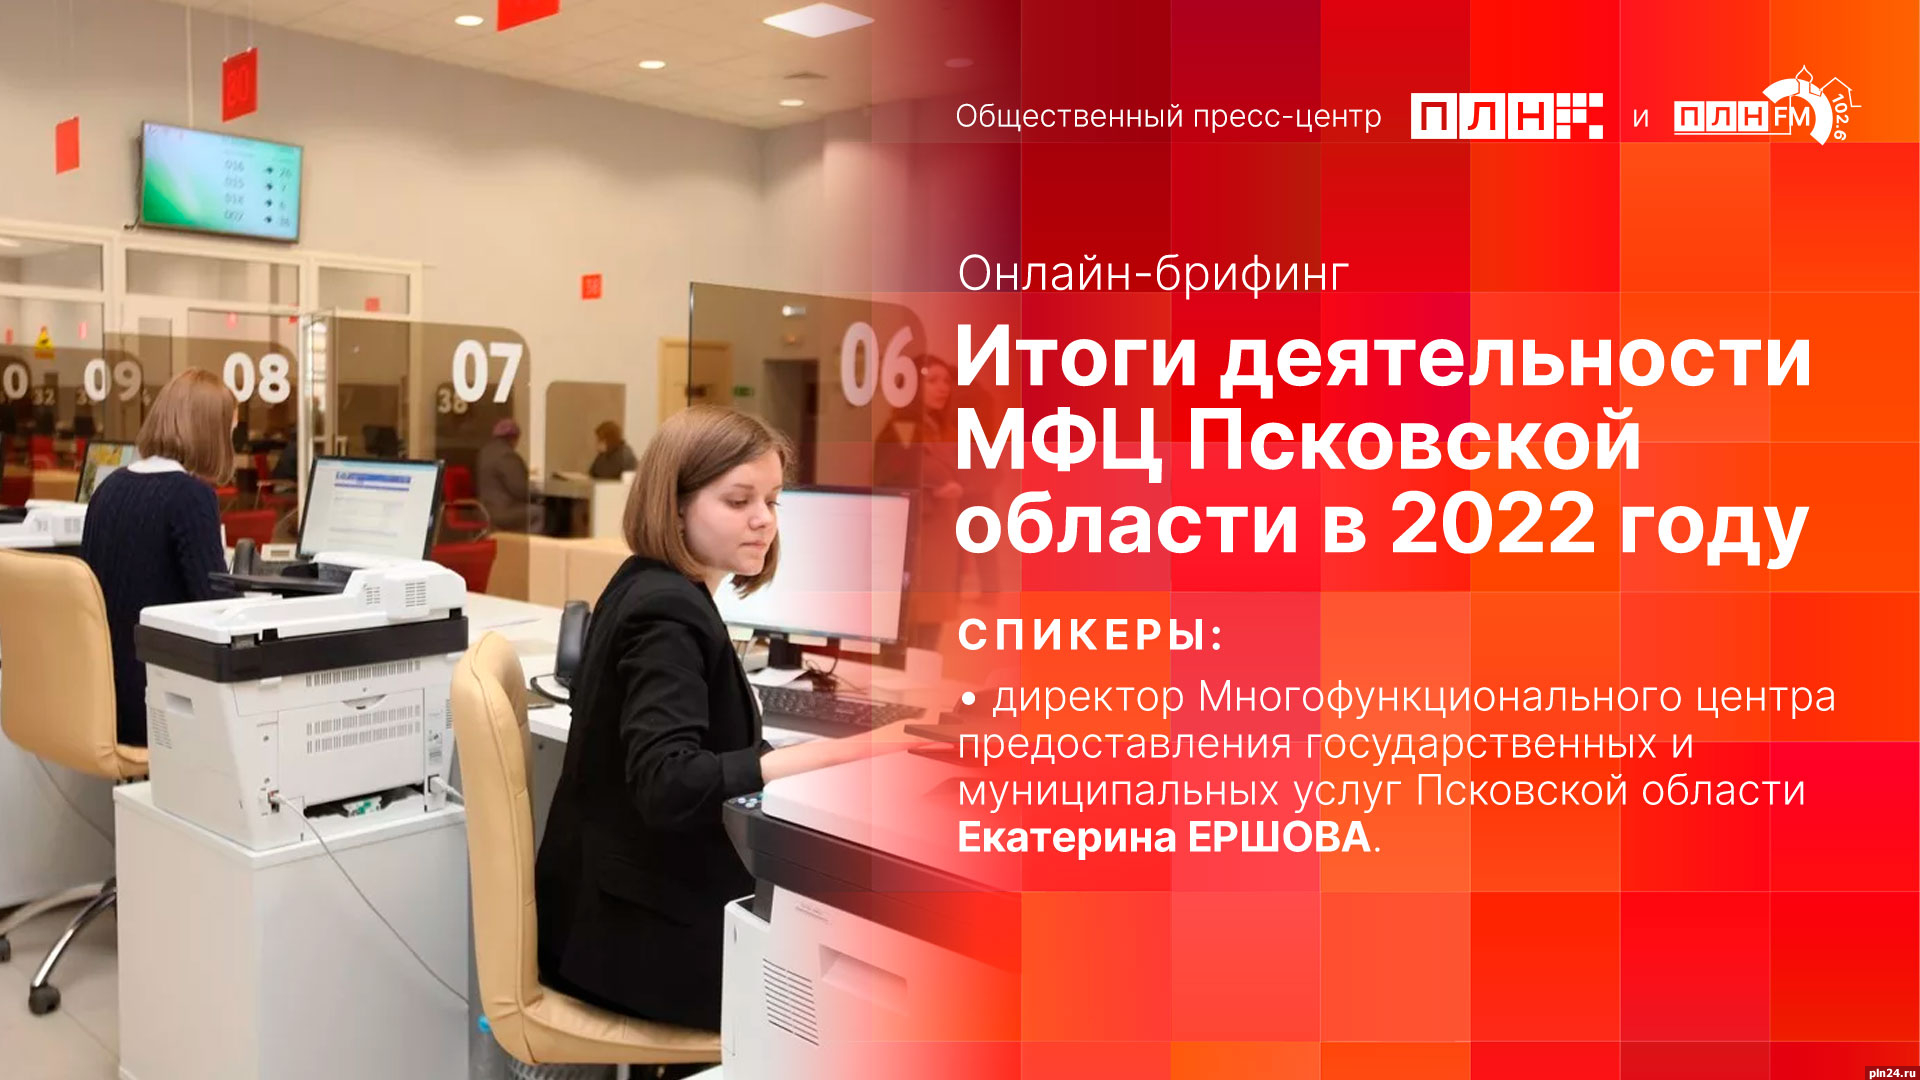 Итоги деятельности МФЦ Псковской области подведут в пресс-центре ПЛН